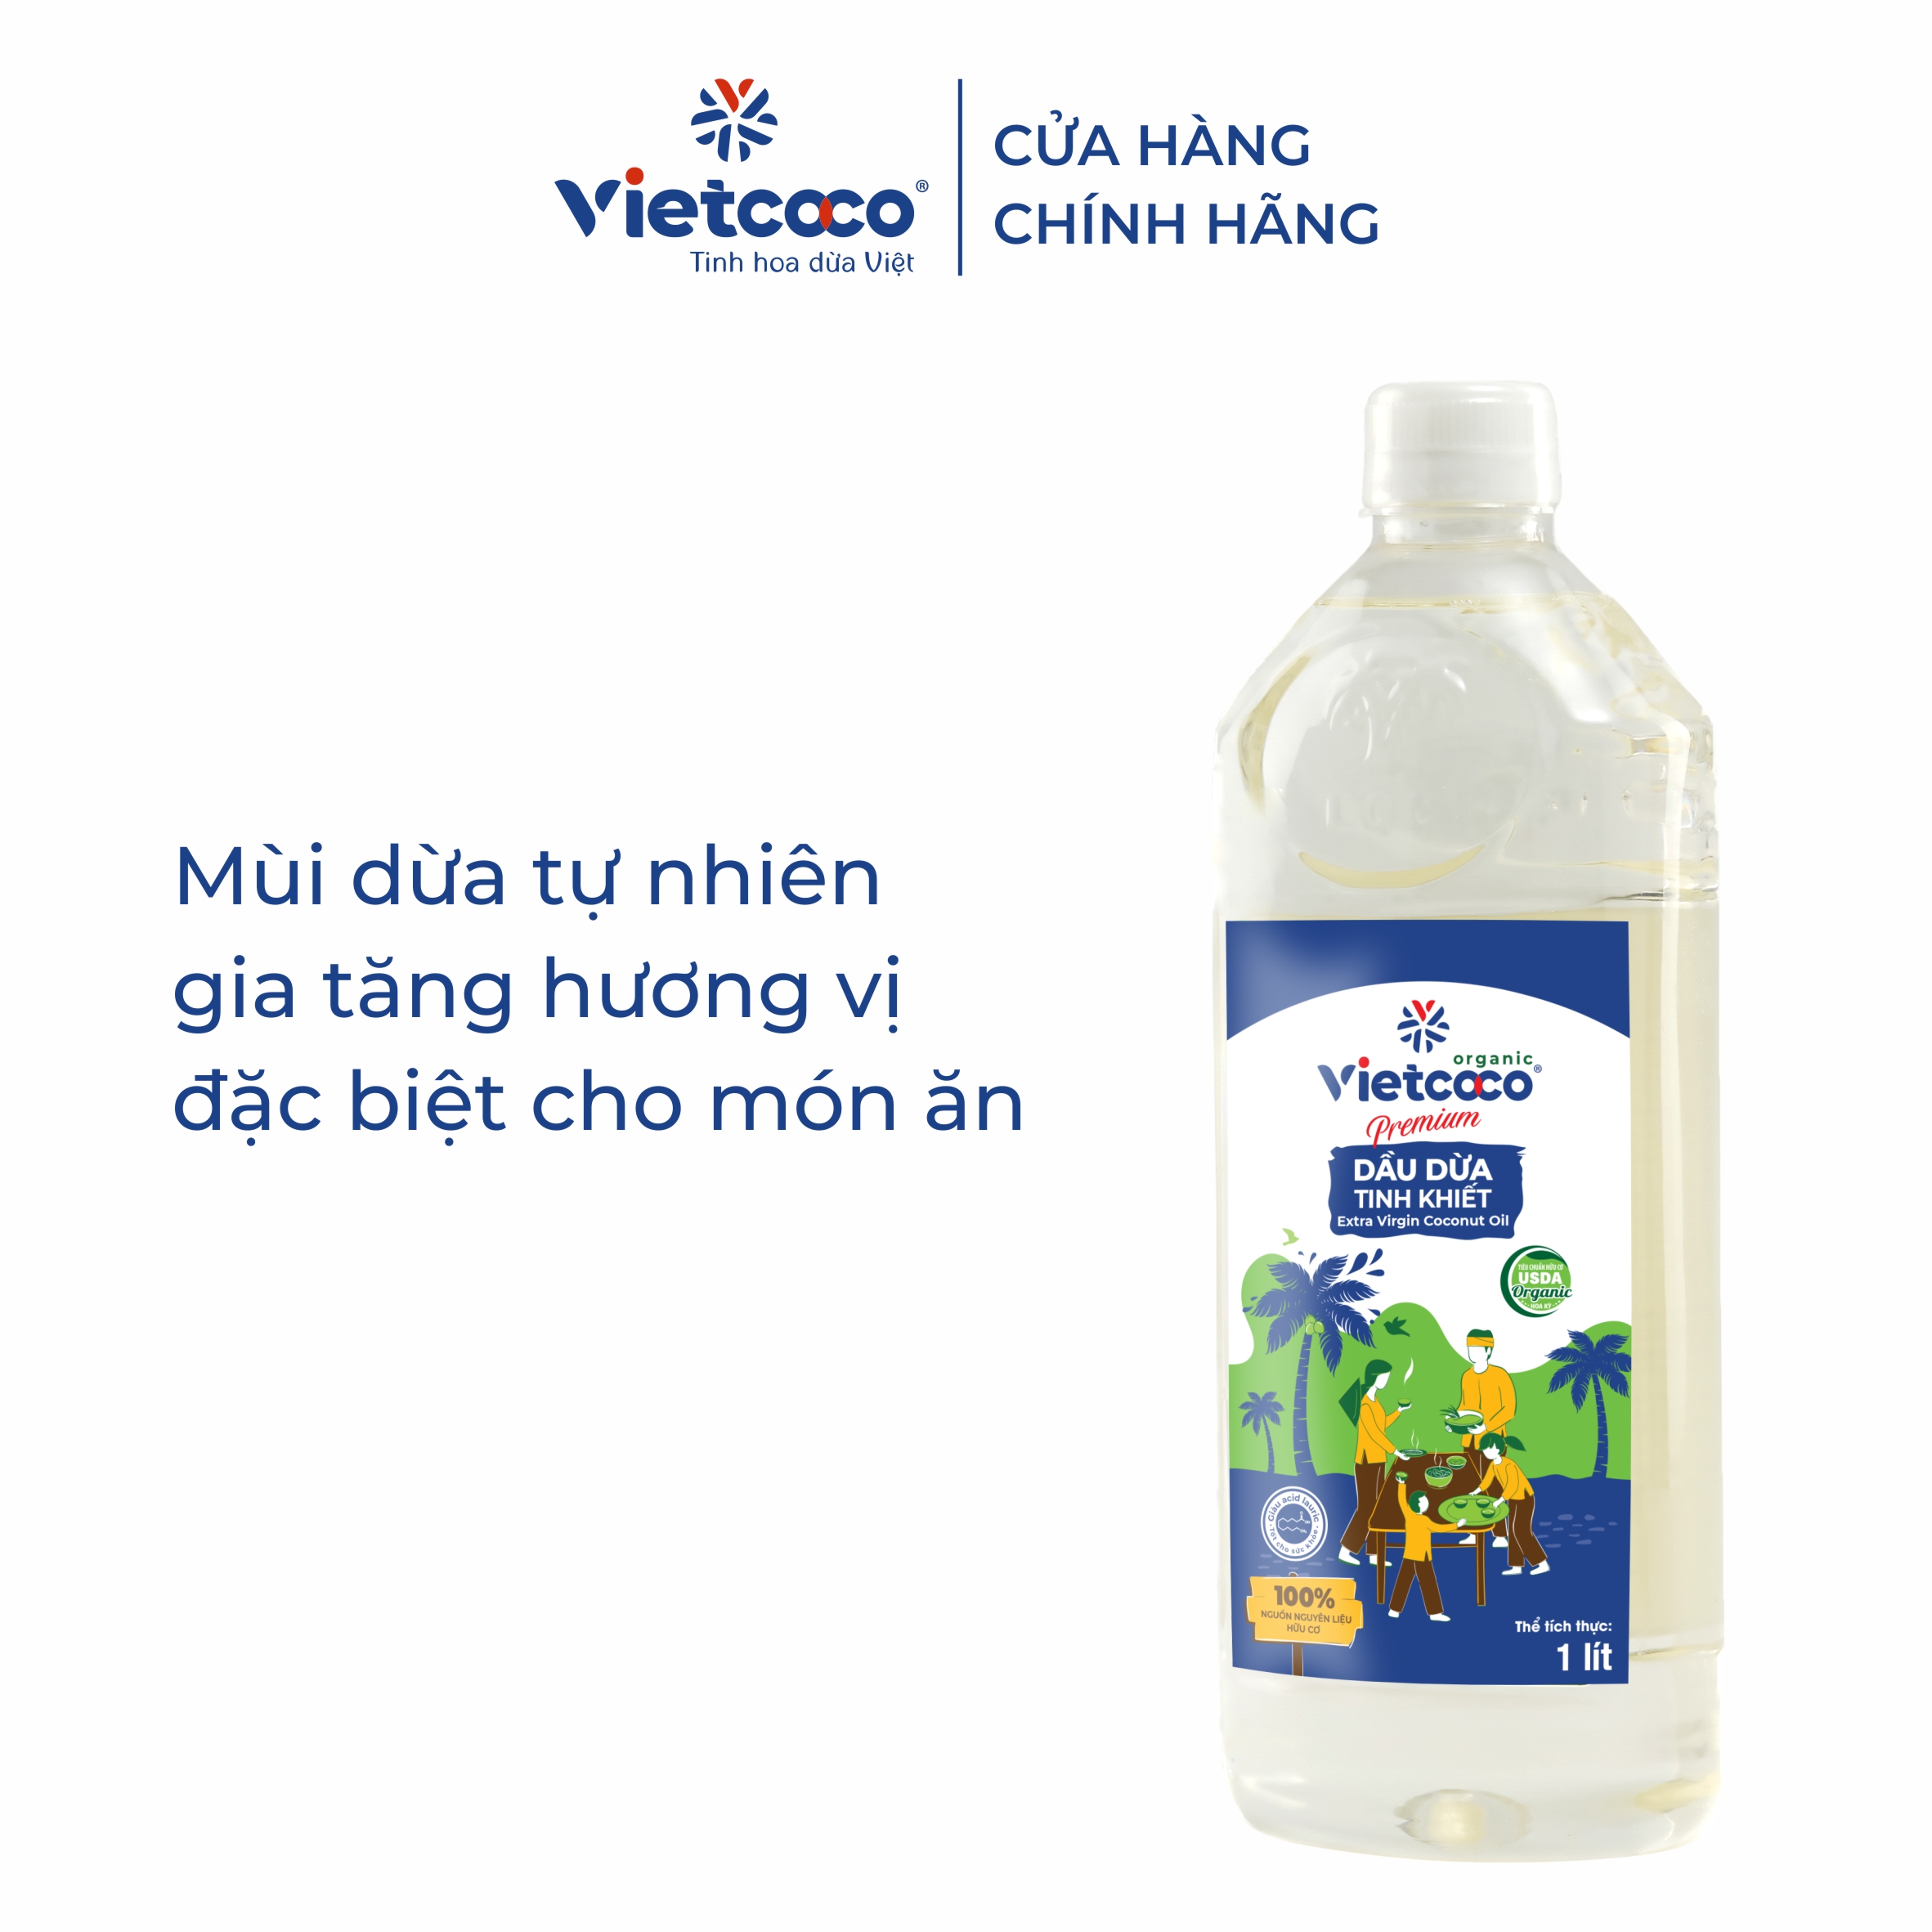 Dầu Dừa Nguyên Chất Organic - Tinh Khiết Vietcoco : chai pet 1 lít